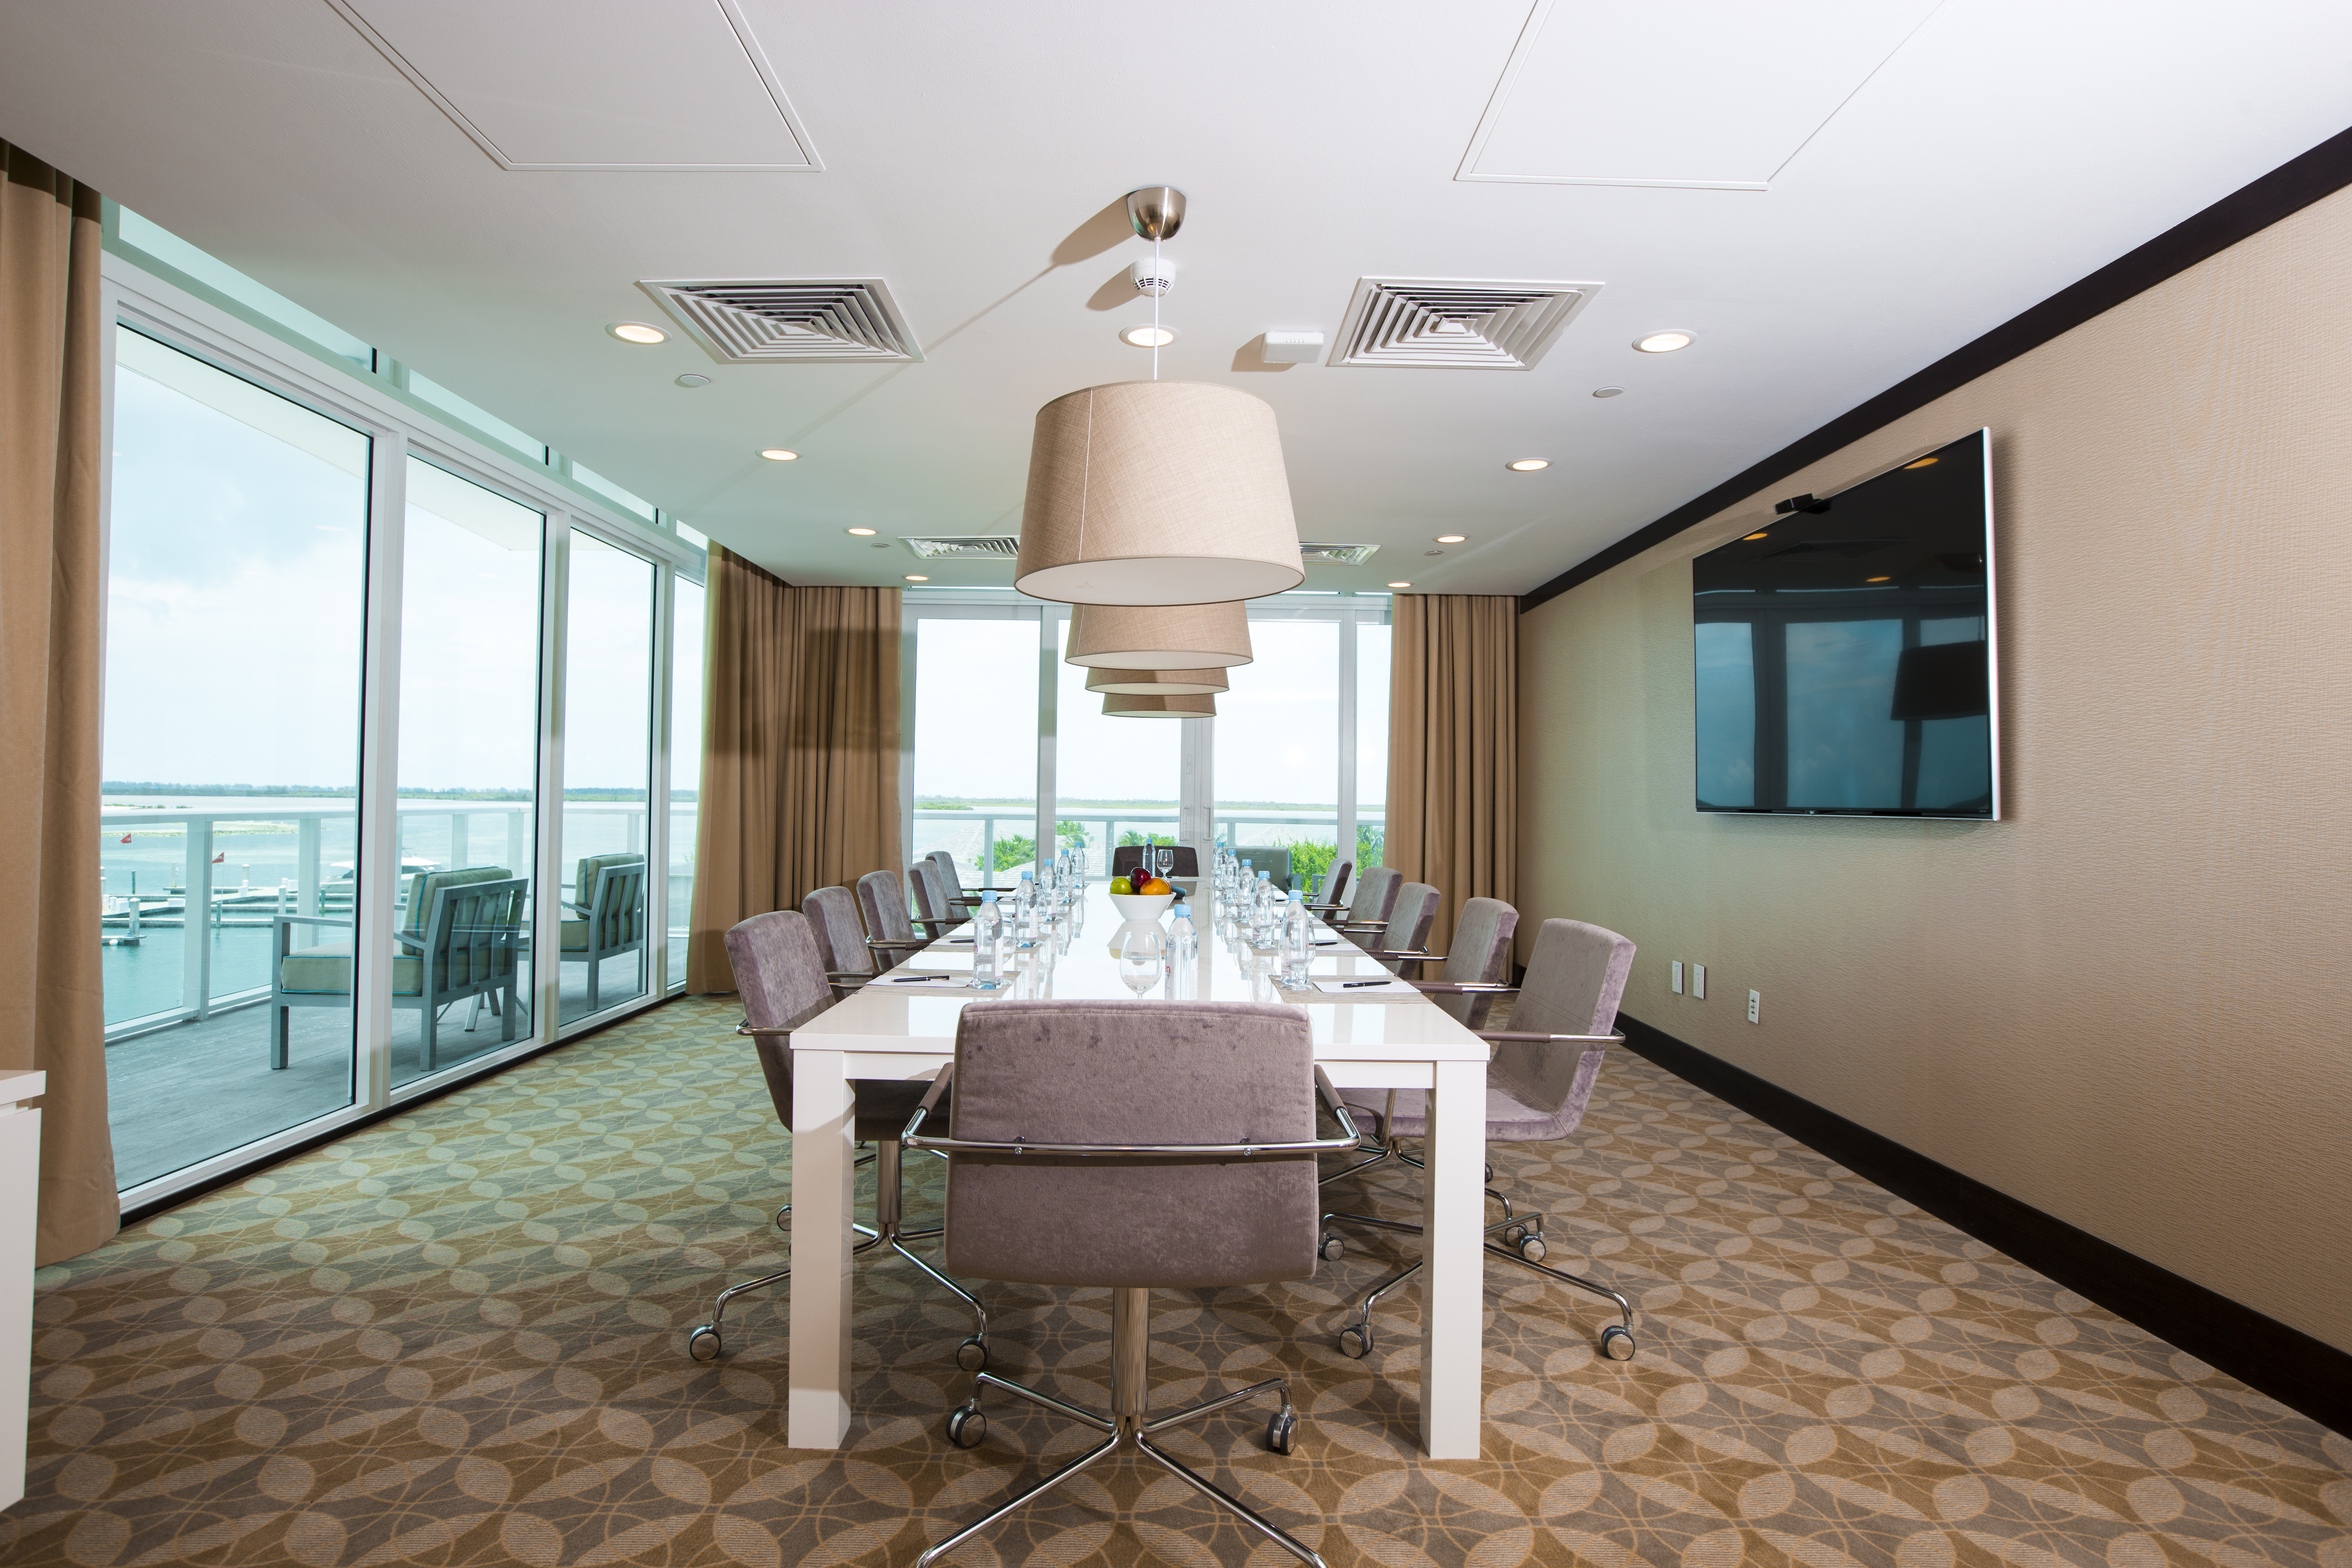 Conference Room at the Hilton at Resorts World Bimin